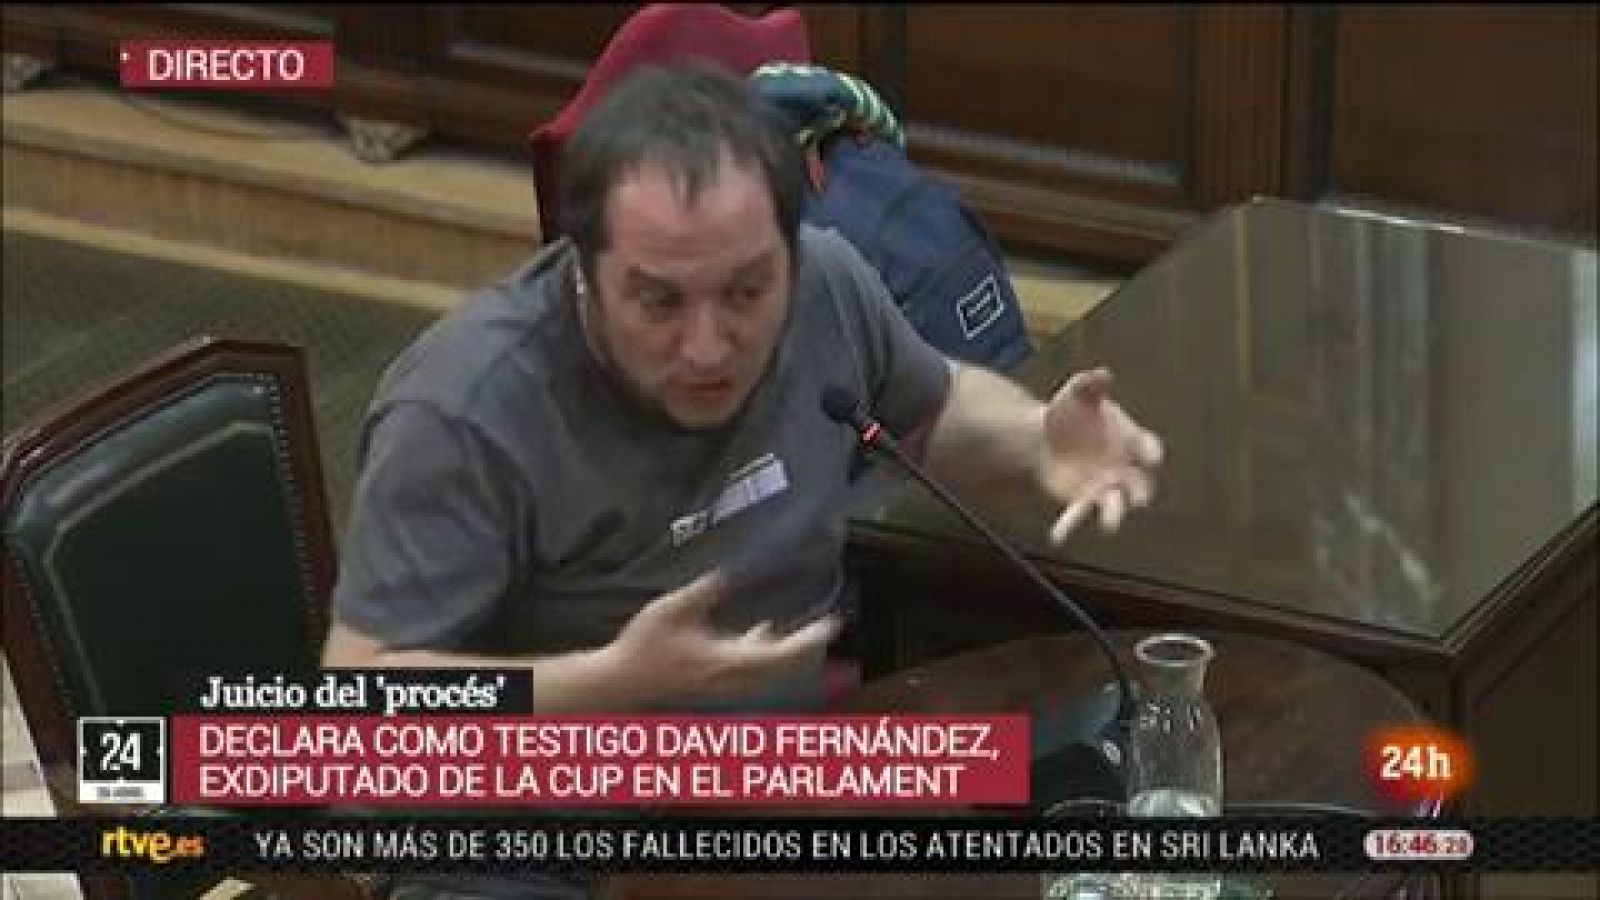 Juicio procés: El exdiputado de la CUP David Fernández asegura que los actos violentos del 1-O fueron algo "puntual" y "marginal"